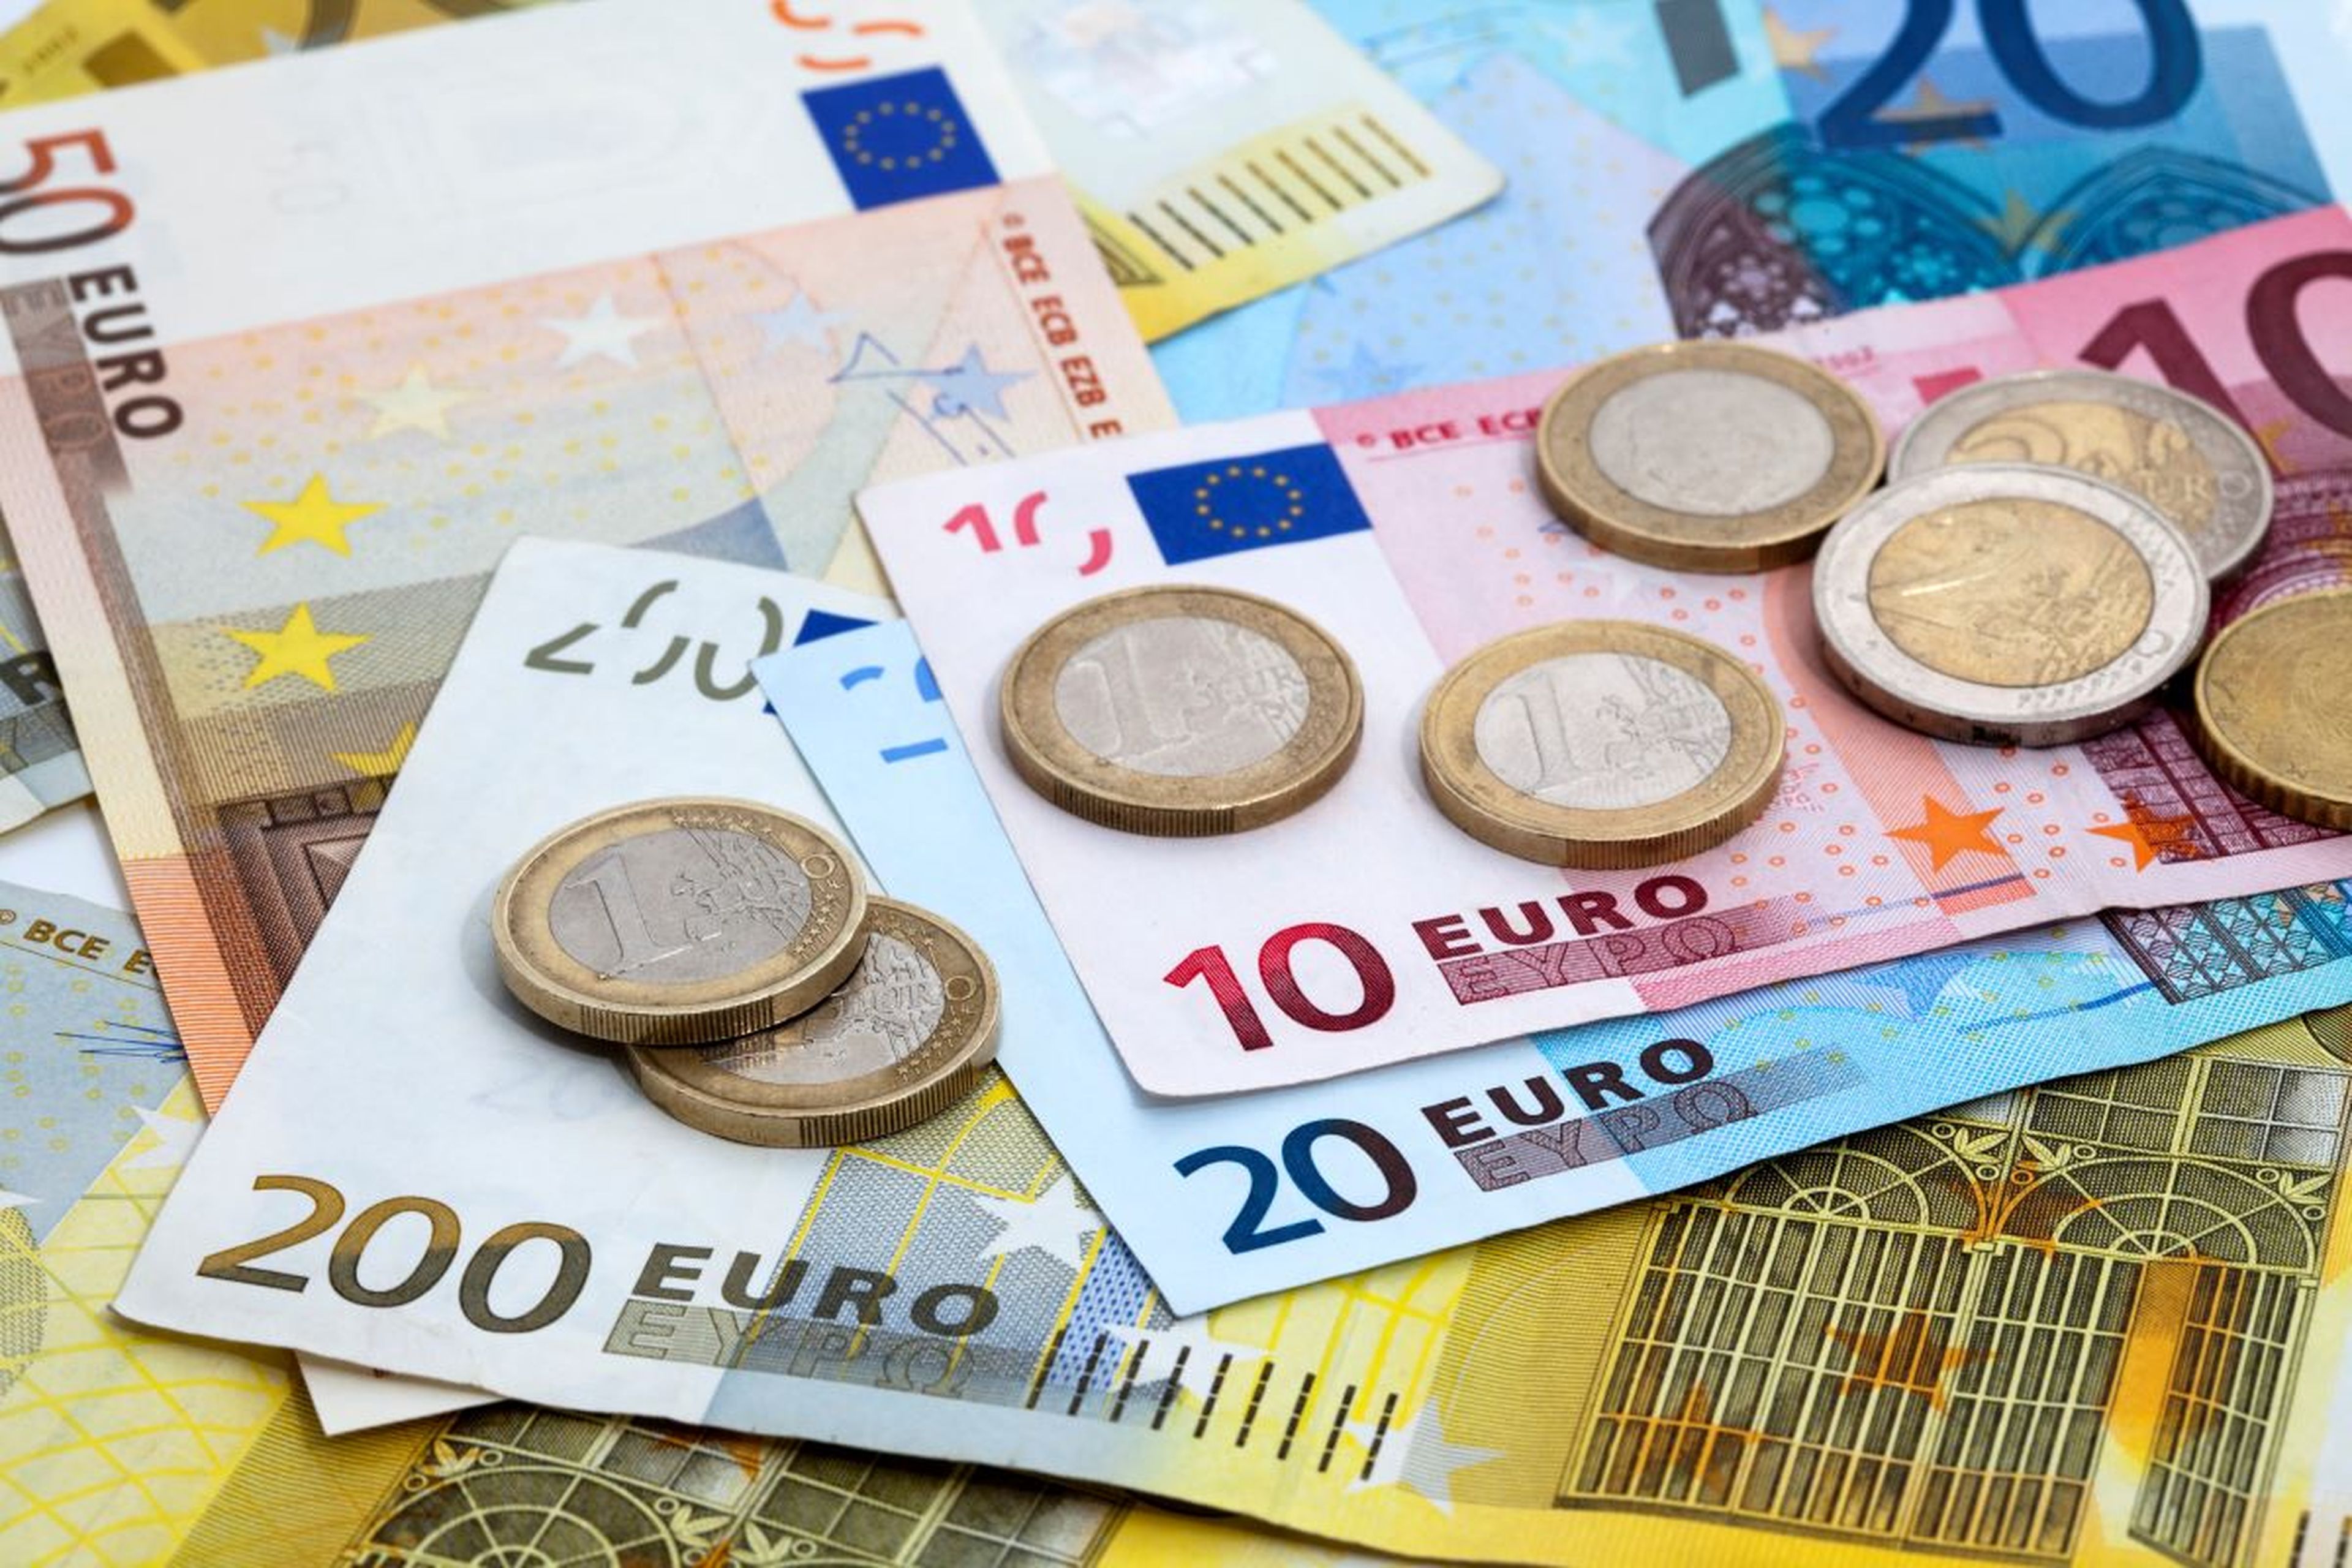 Monedas y billetes de euros